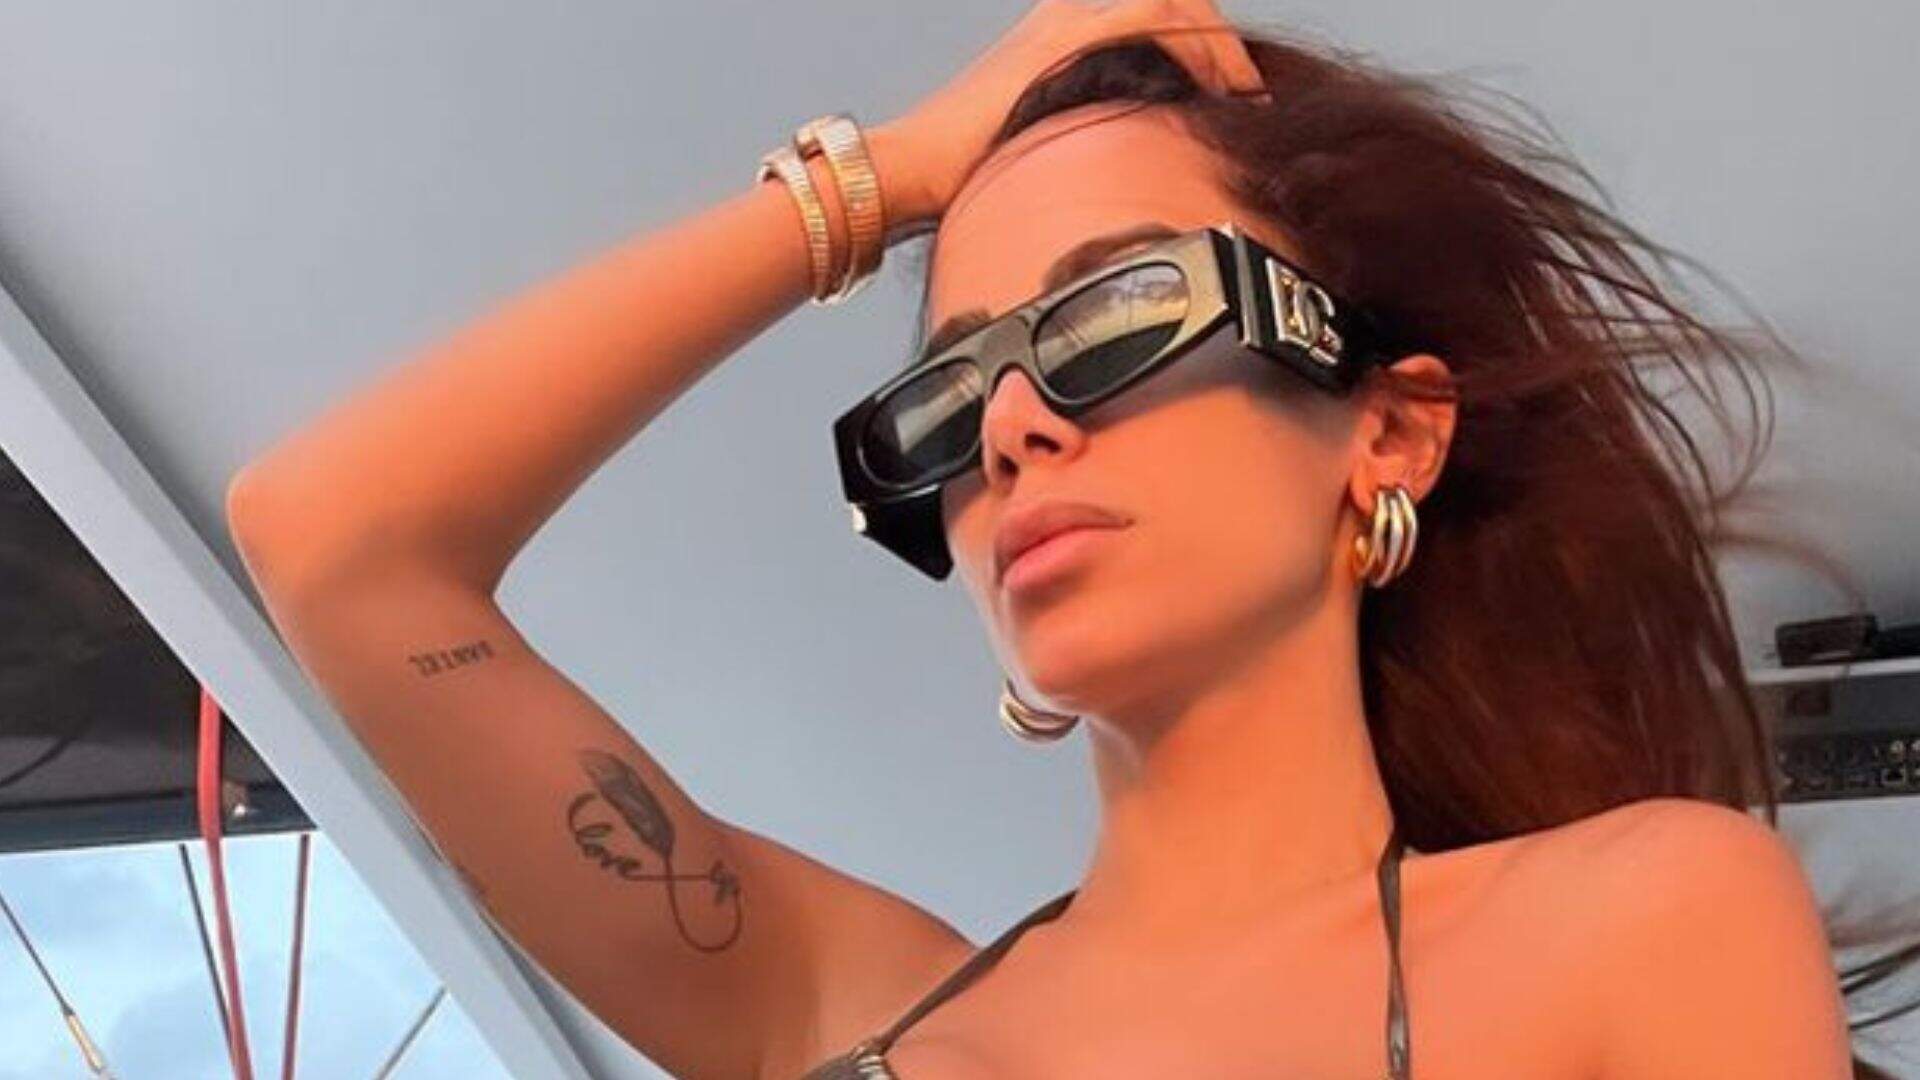 Com tatuagem íntima aparecendo, Anitta cava no limite seu maiô: “Quero ver pra tirar agora” - Metropolitana FM